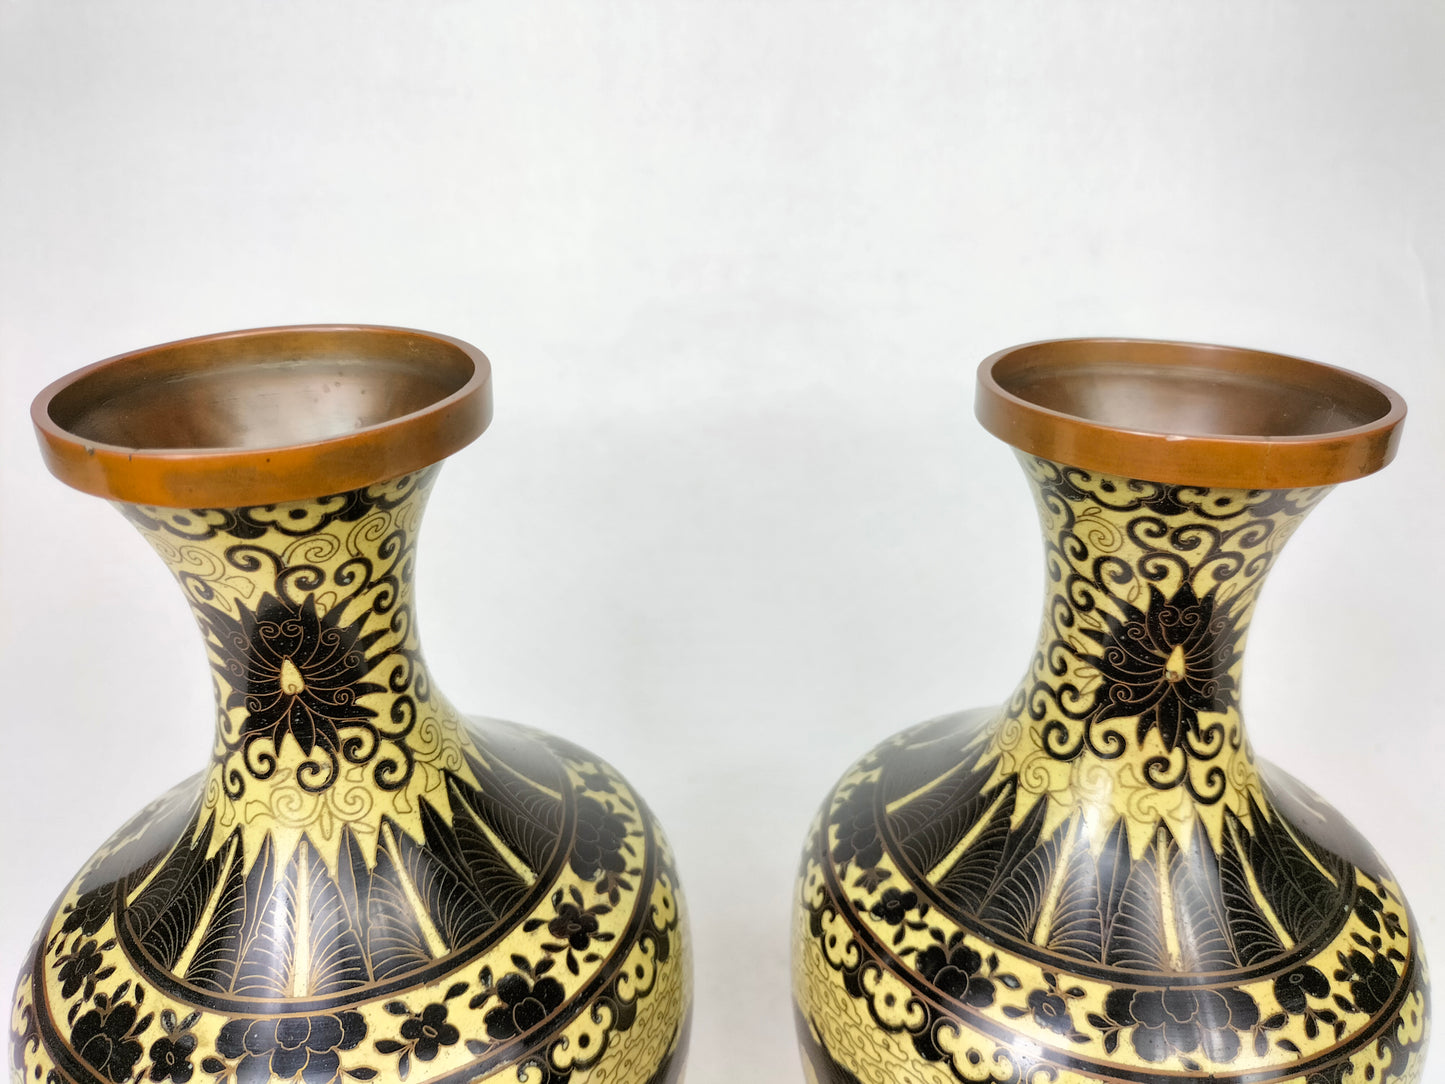 Par de antigos vasos cloisonne japoneses com dragões imperiais // Início do século XX